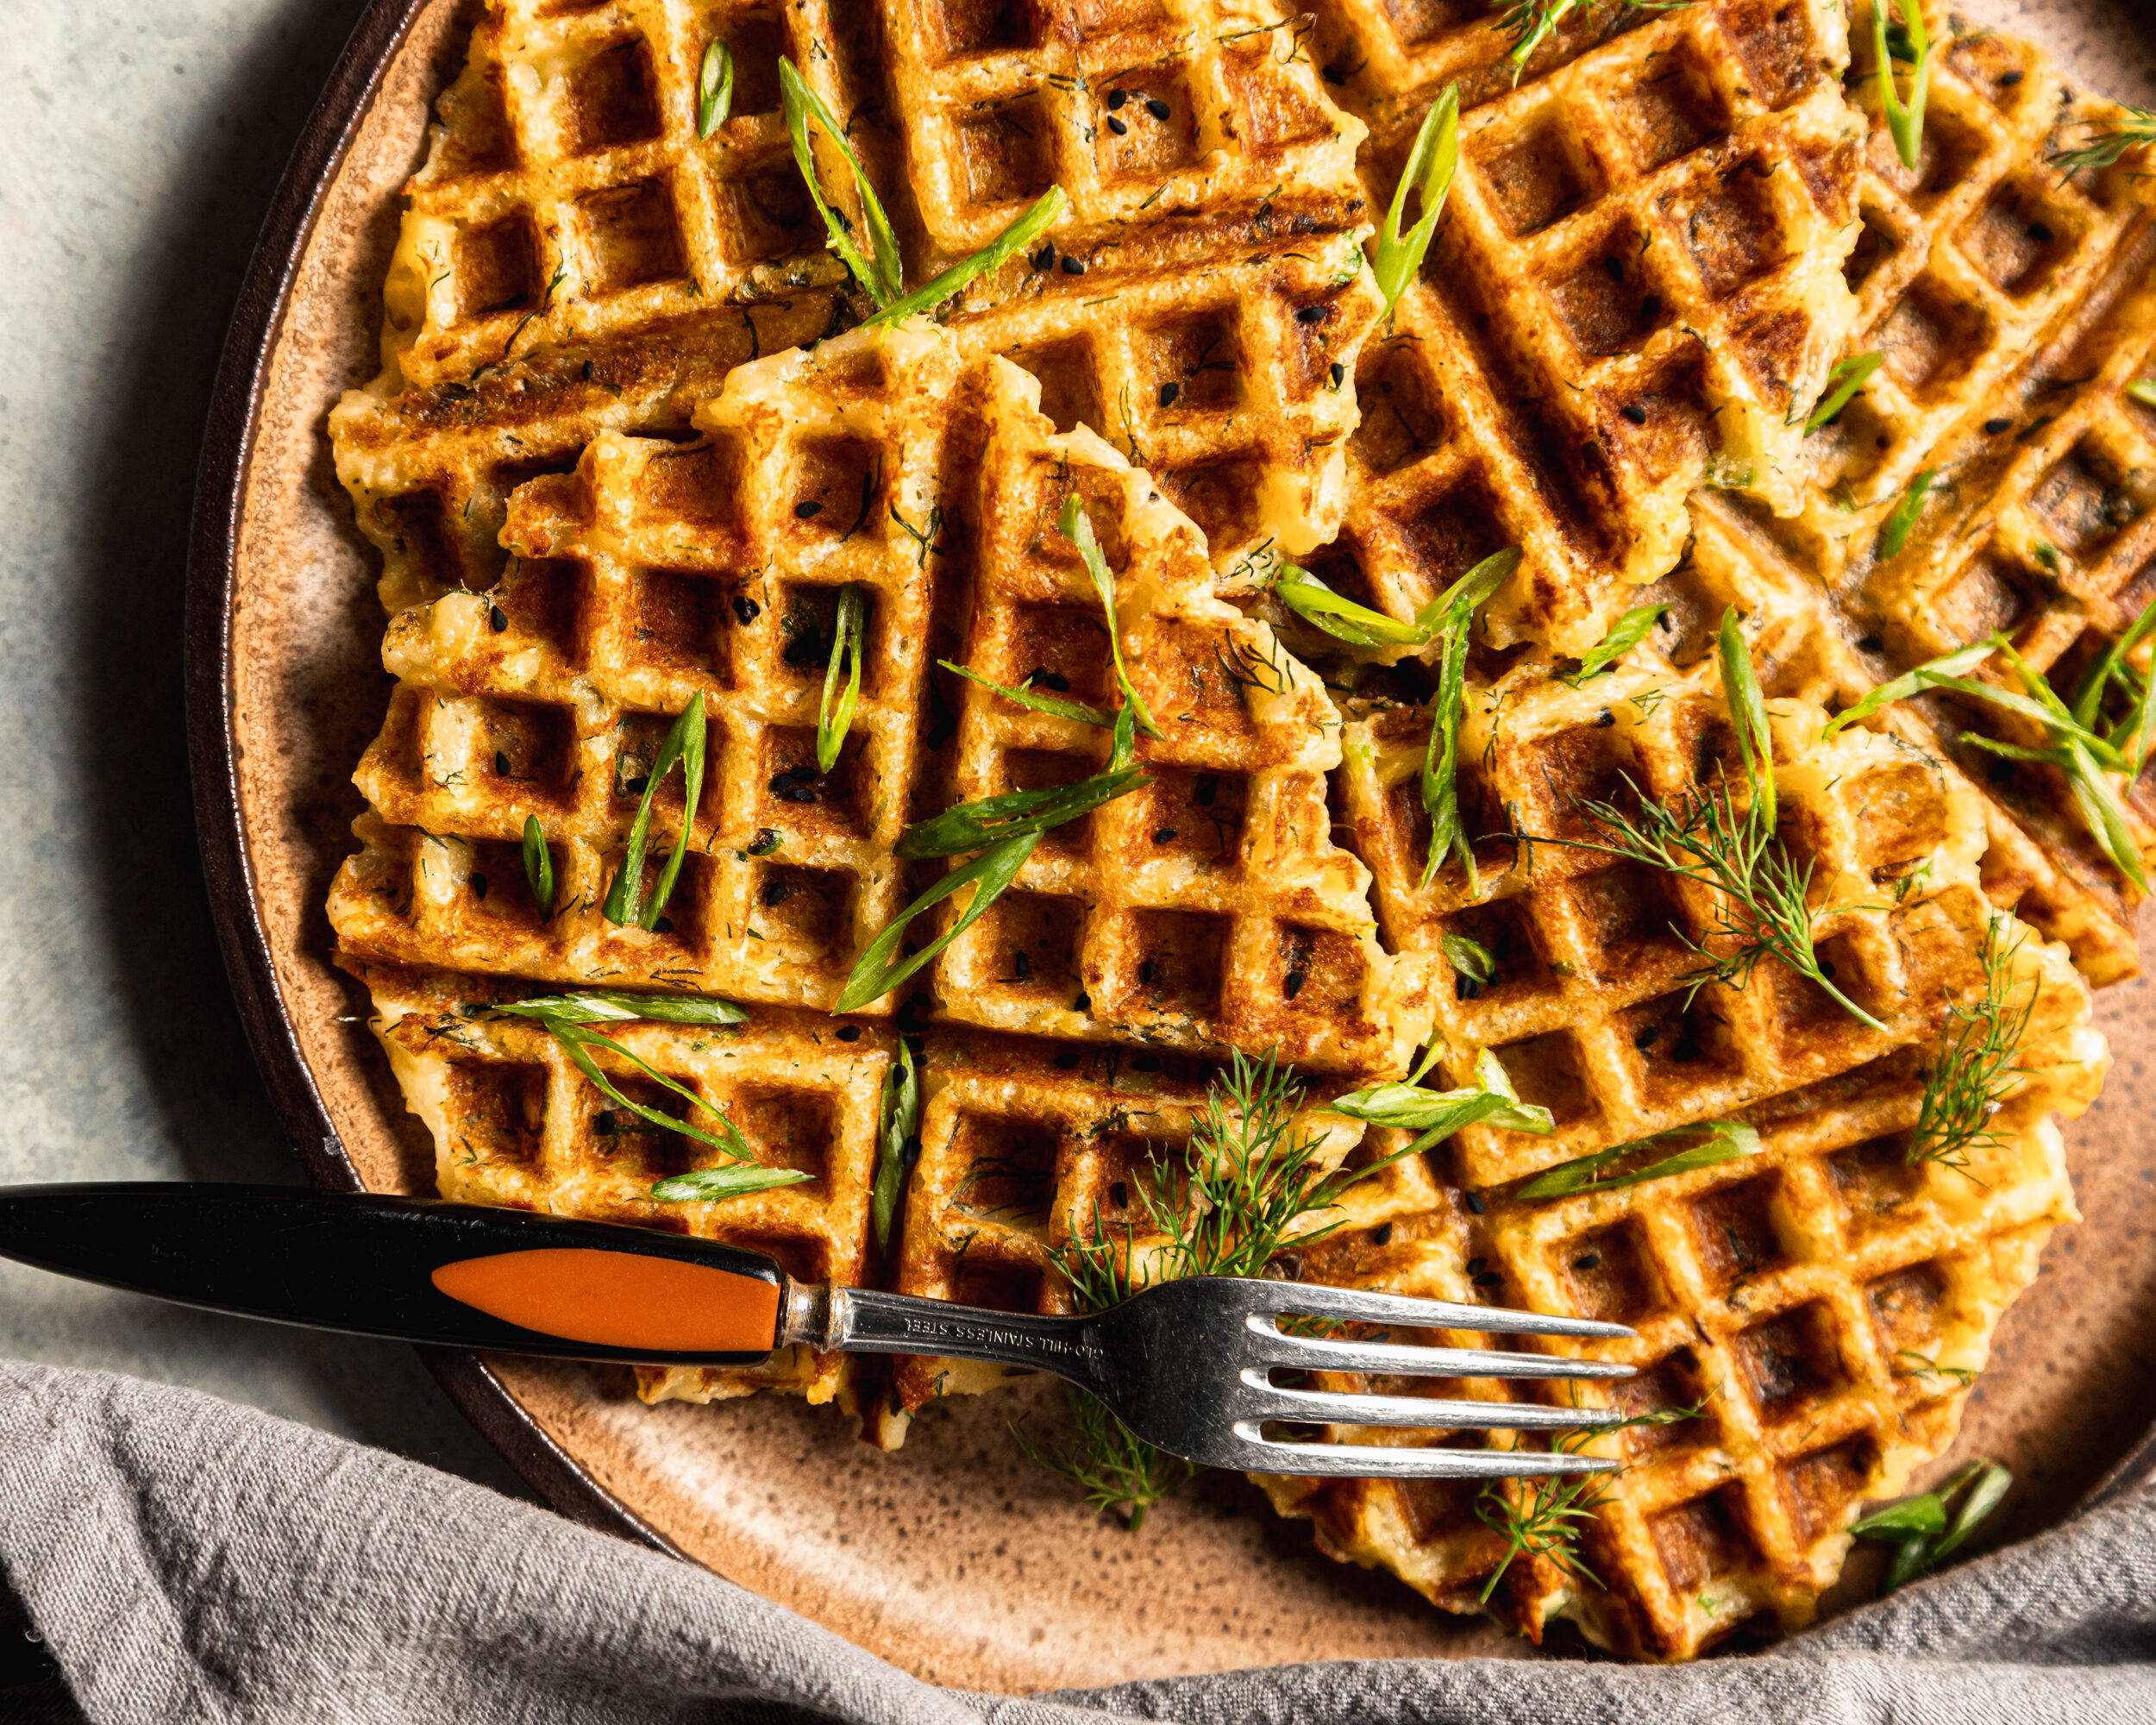 Plant-based breakfast ideas: Mashed Potato Waffles